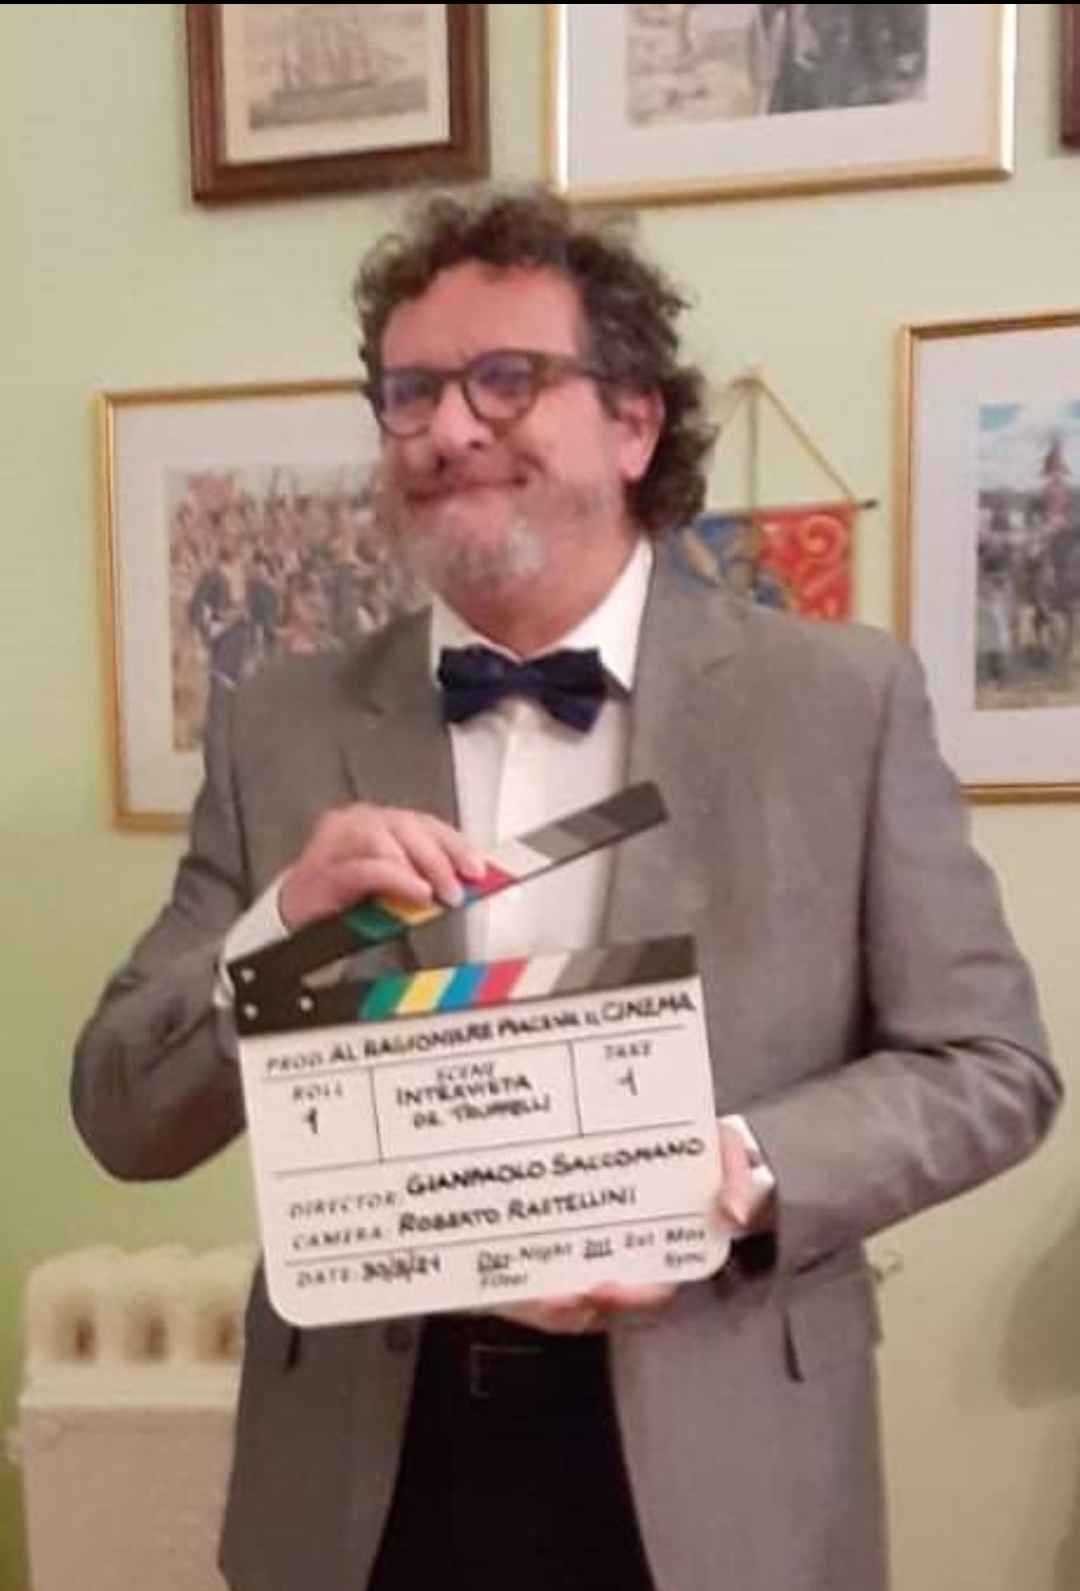 Il pluripremiato regista Gianpaolo Saccomano annuncia via social il ciak del suo nuovo atteso cortometraggio